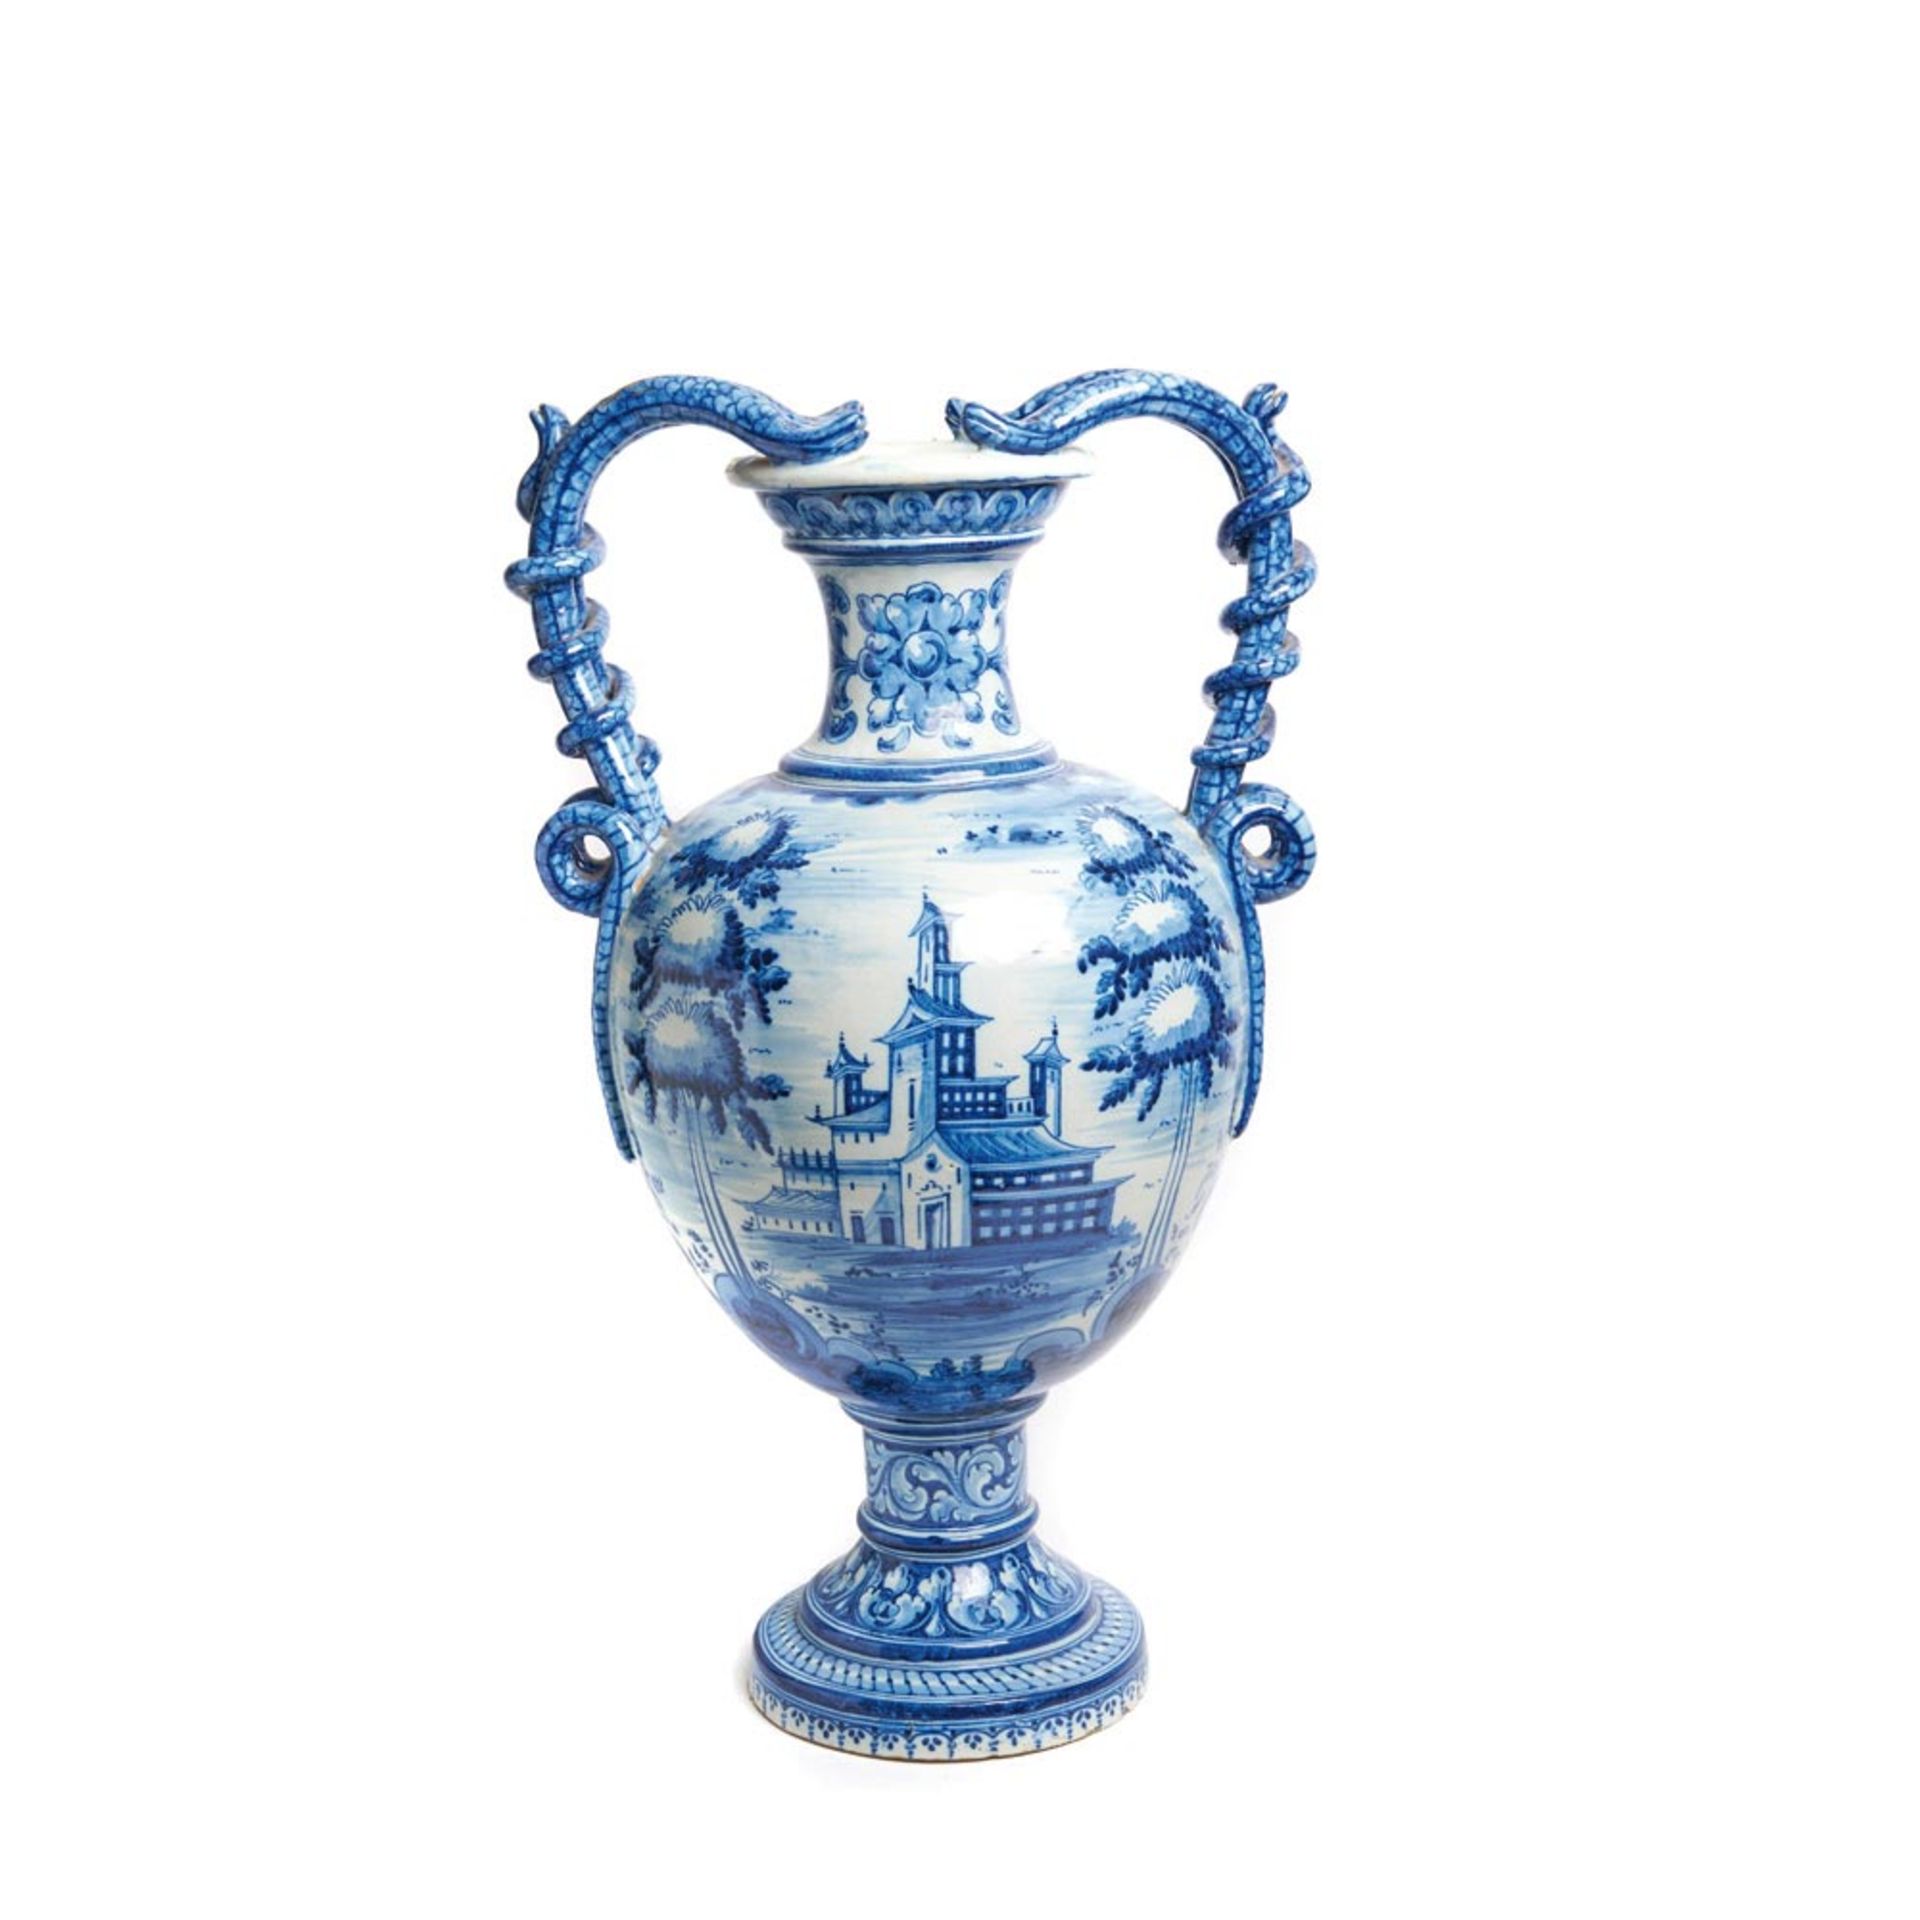 Jarrón en cerámica de Talavera esmaltada azul y blanca con decoración de personajes a caballo en